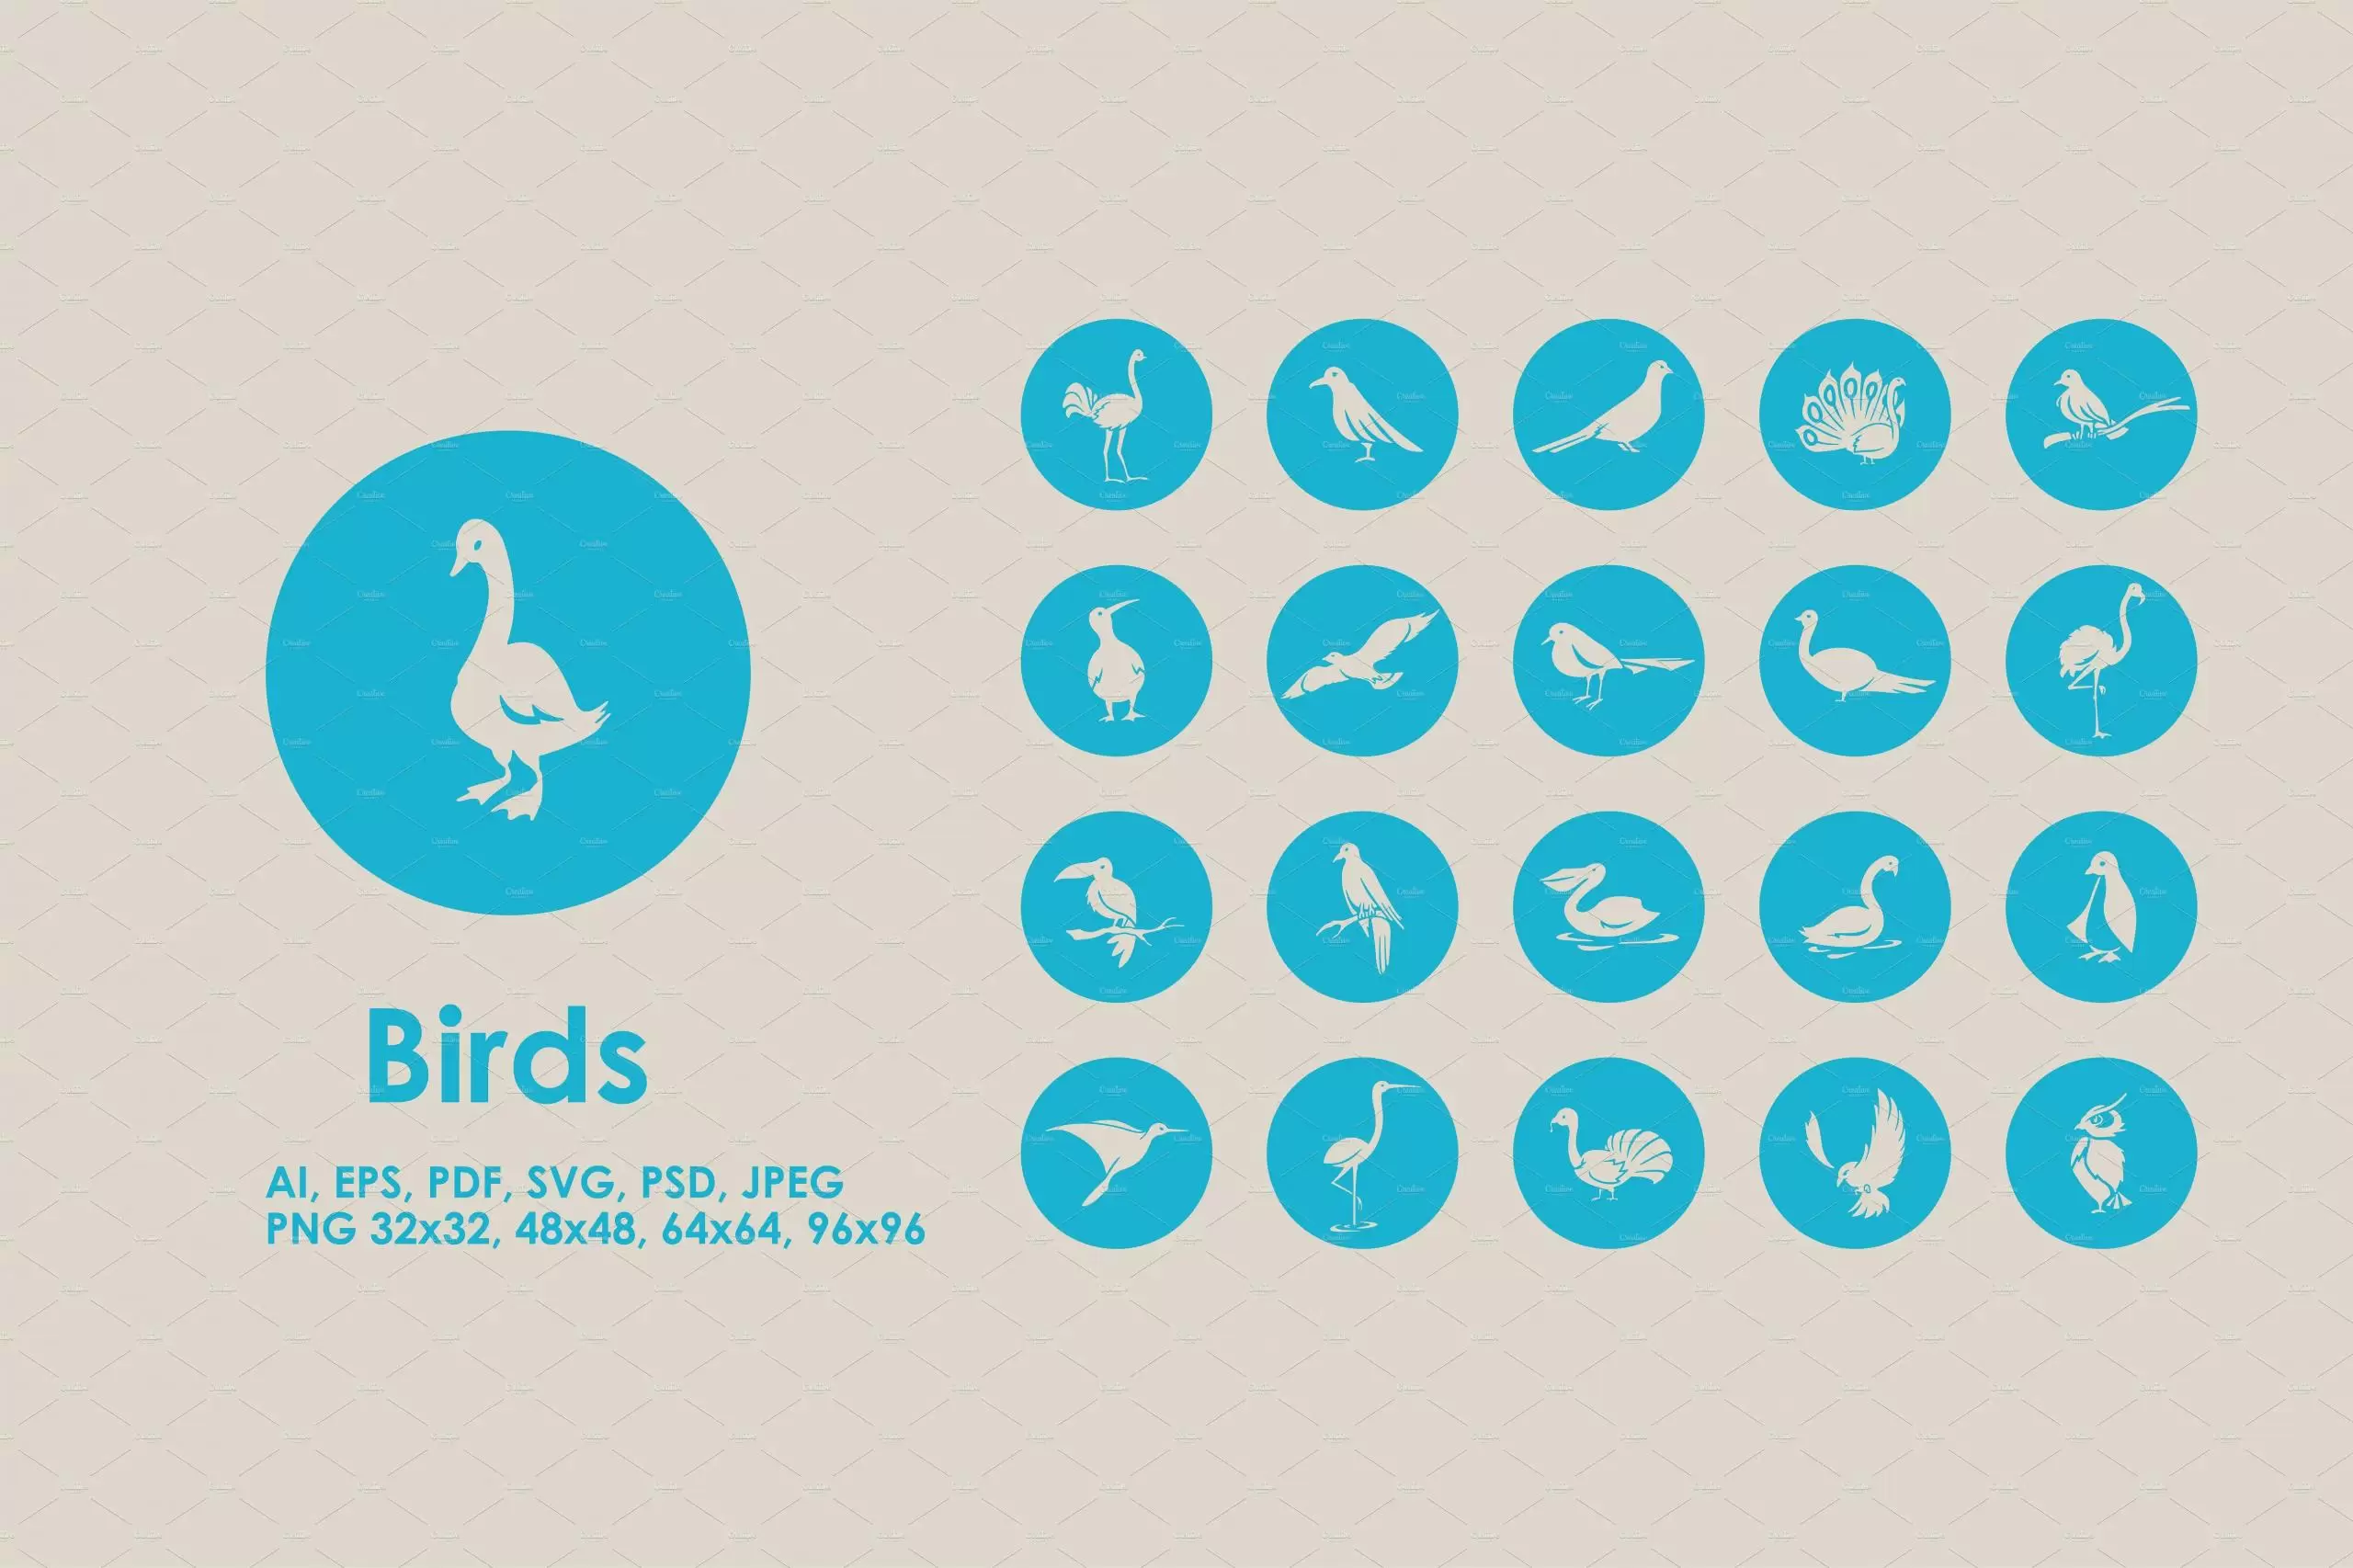 鸟类图标素材 Birds icons插图